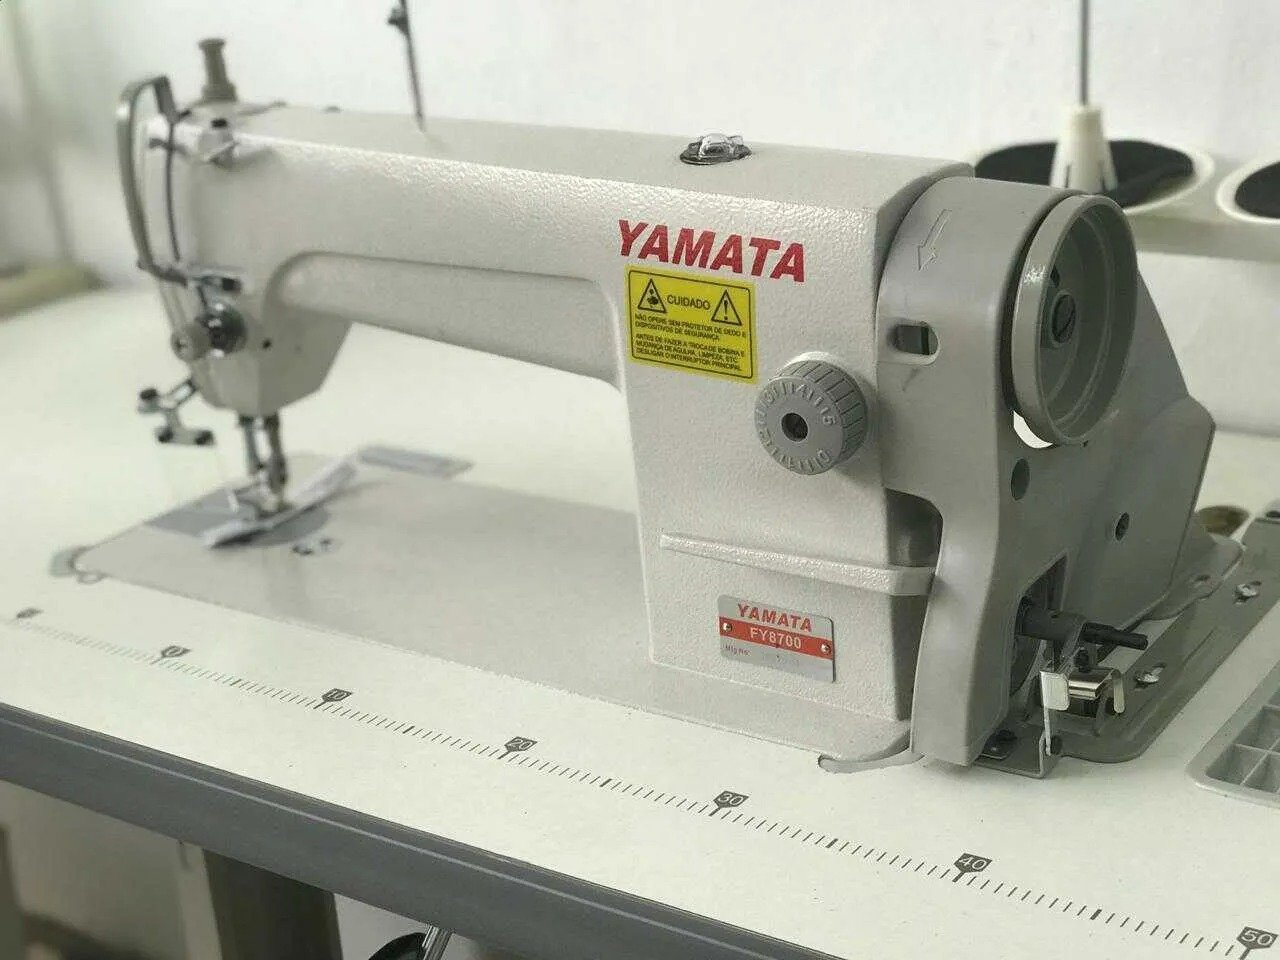 Reta Industrial Yamata Fy8700 Completa Ultimas Peças - 1